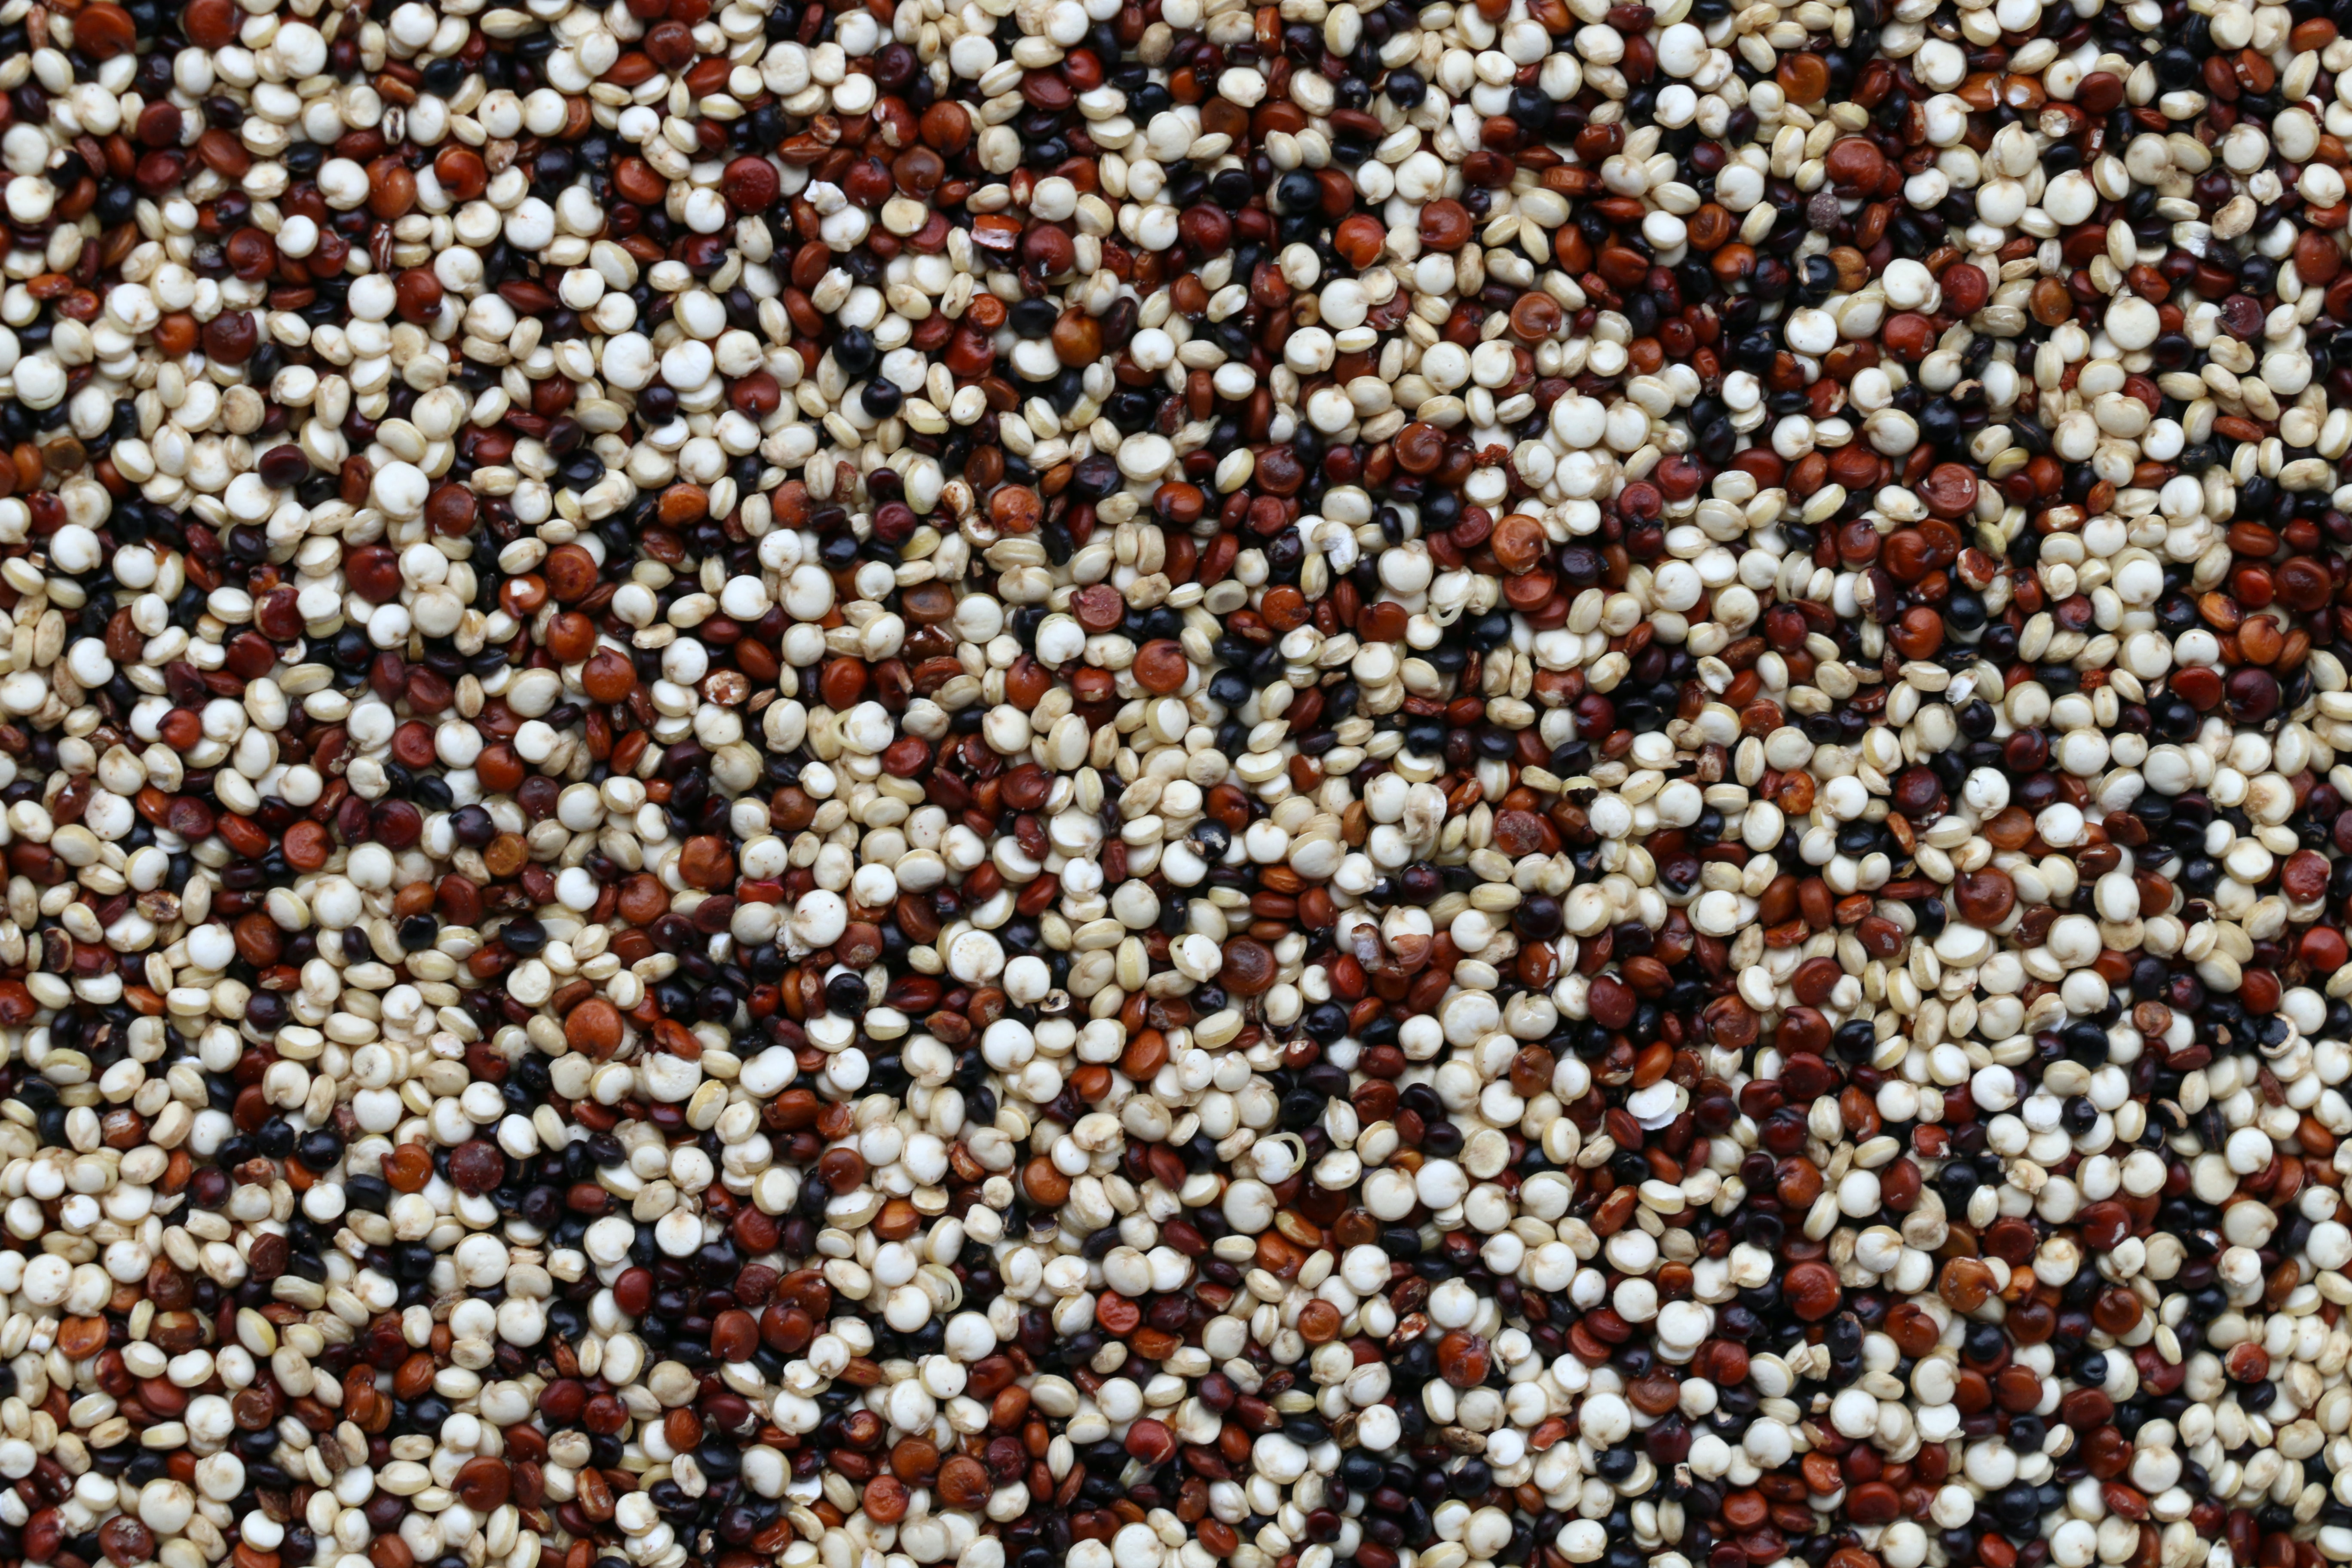 Kvinoja je južnoamerička cjelovita žitarica